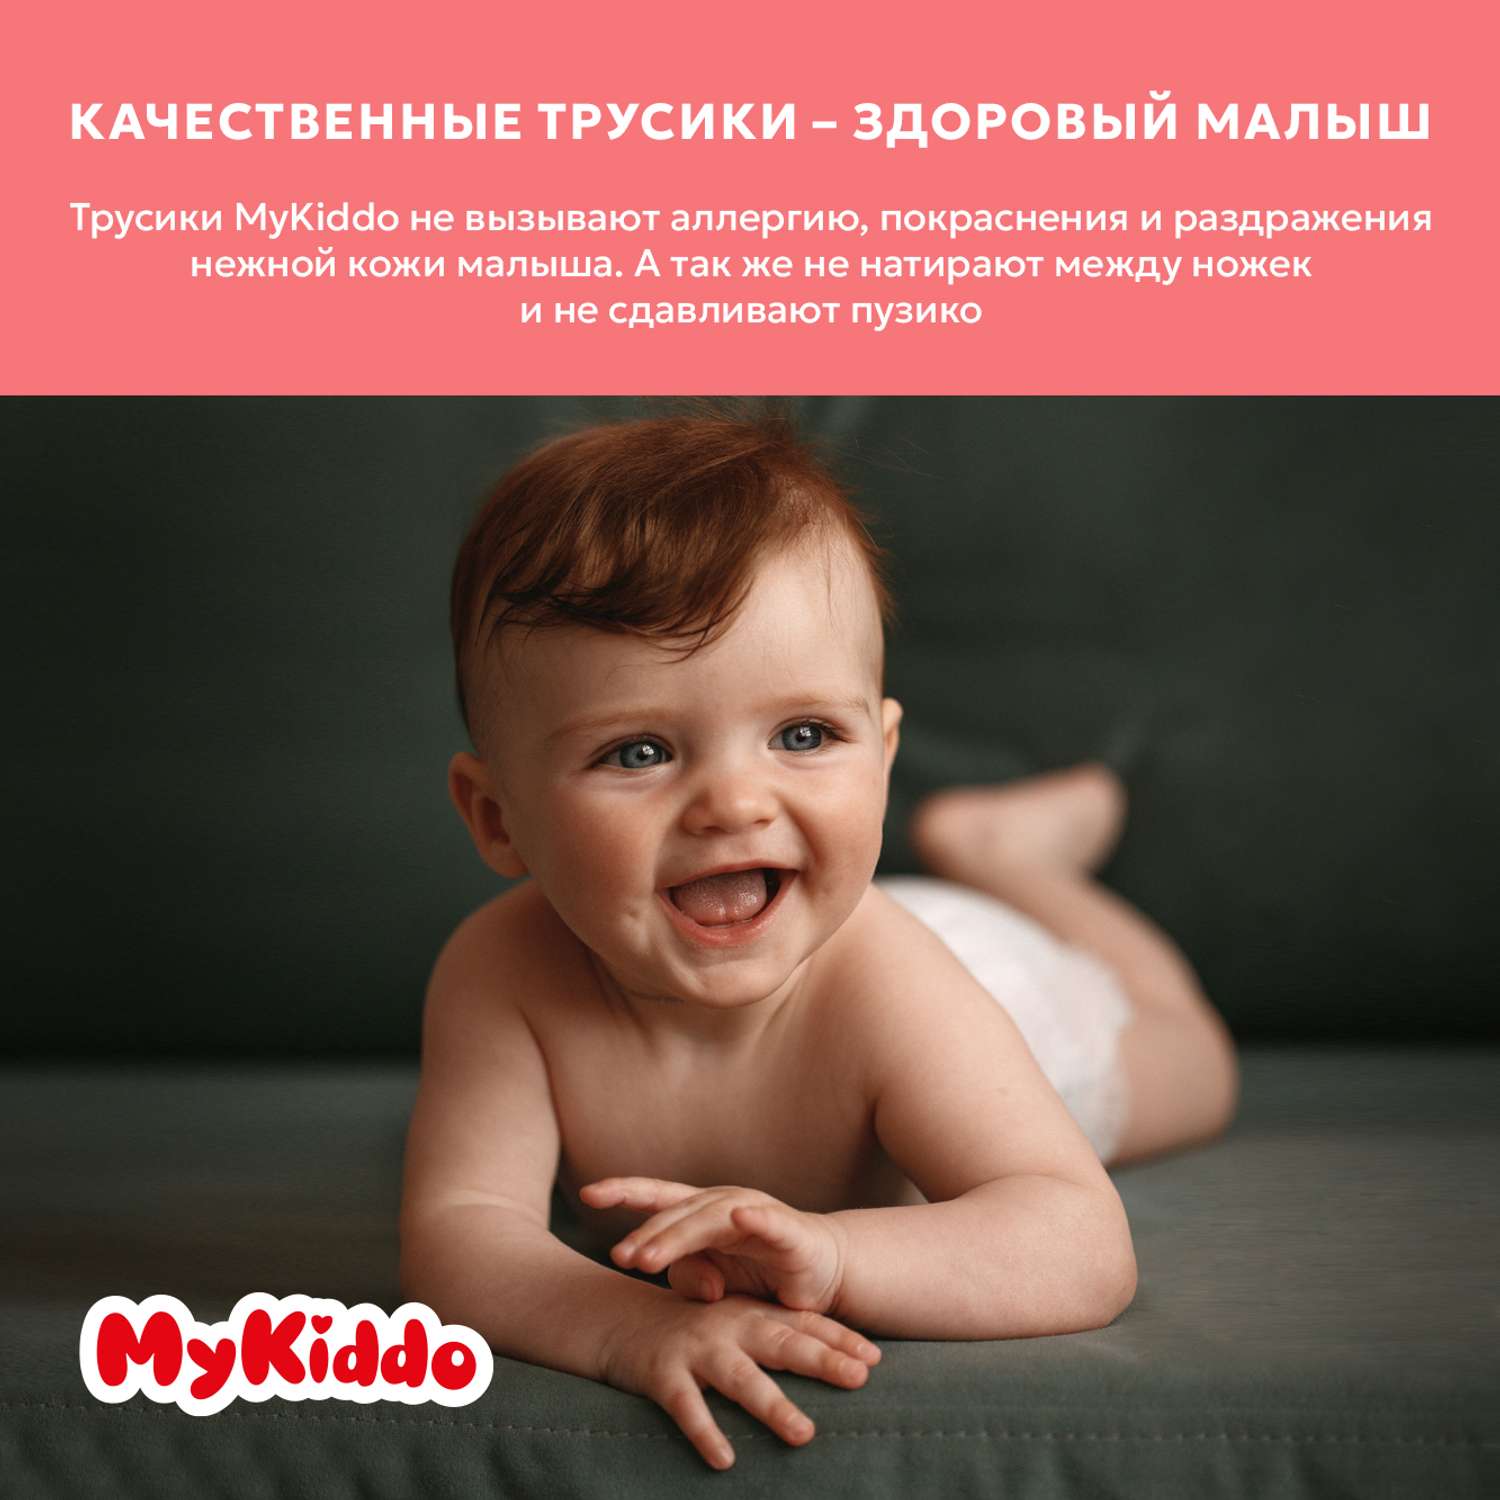 Подгузники MyKiddo Premium для новорожденных 0-6 кг размер S 3уп по 24 шт - фото 9